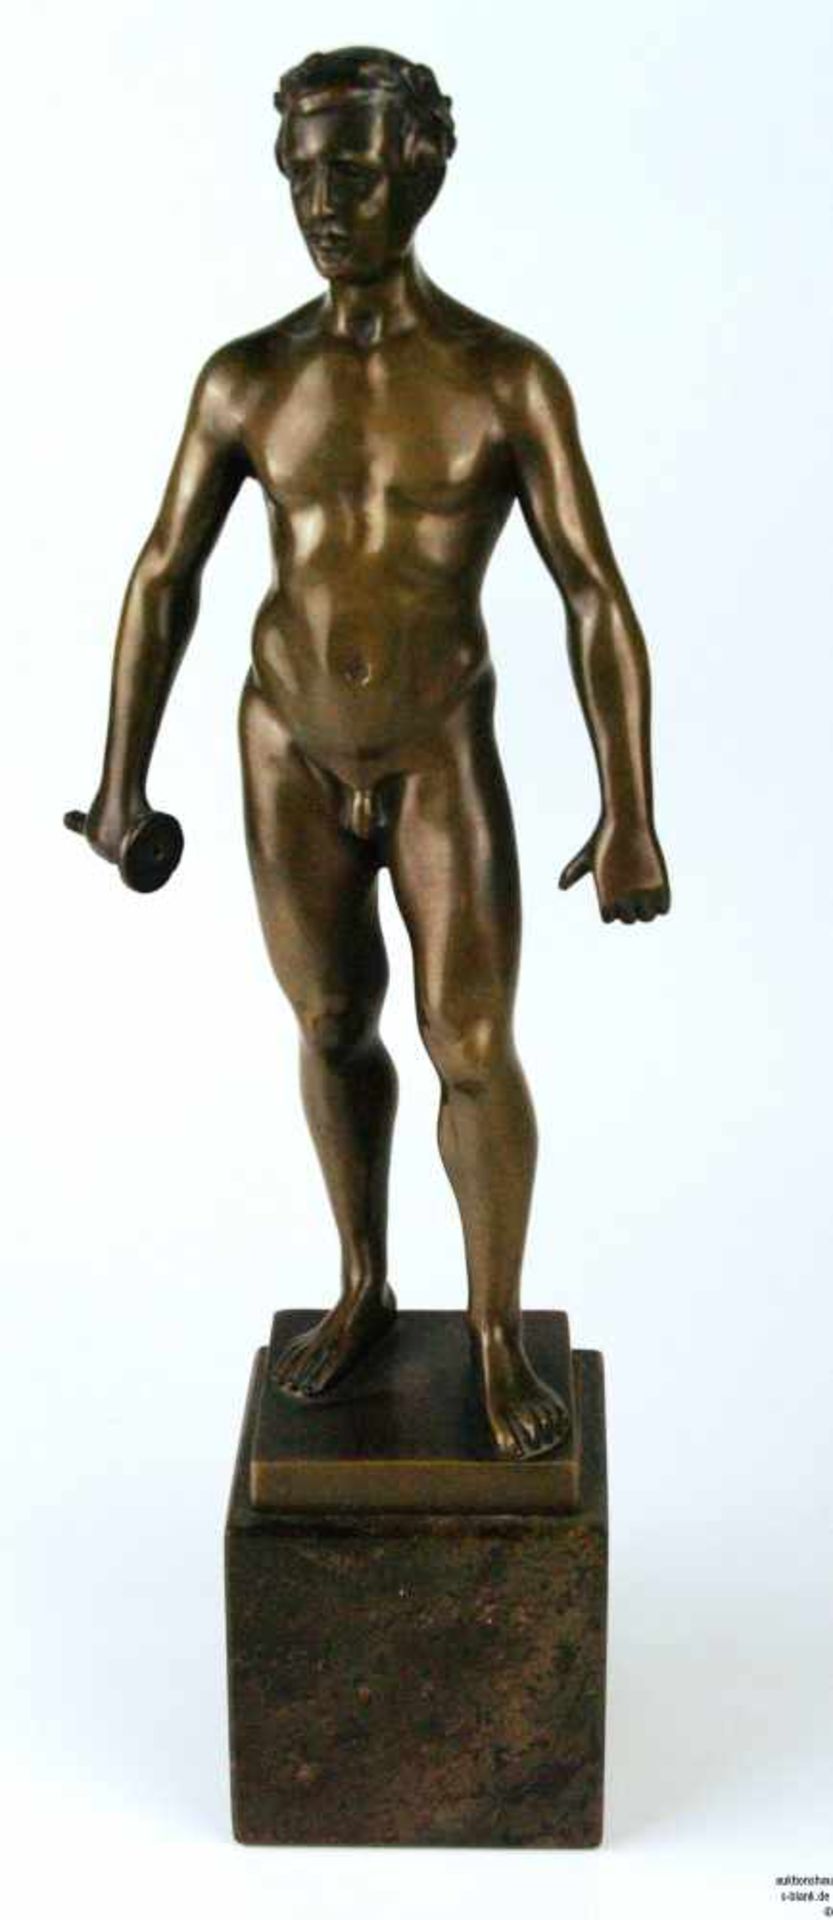 Schwatenberg, Spiro (tätig 1898 - 1922) - Männlicher Akt eines Fechters, Bronze, Florett-Klinge